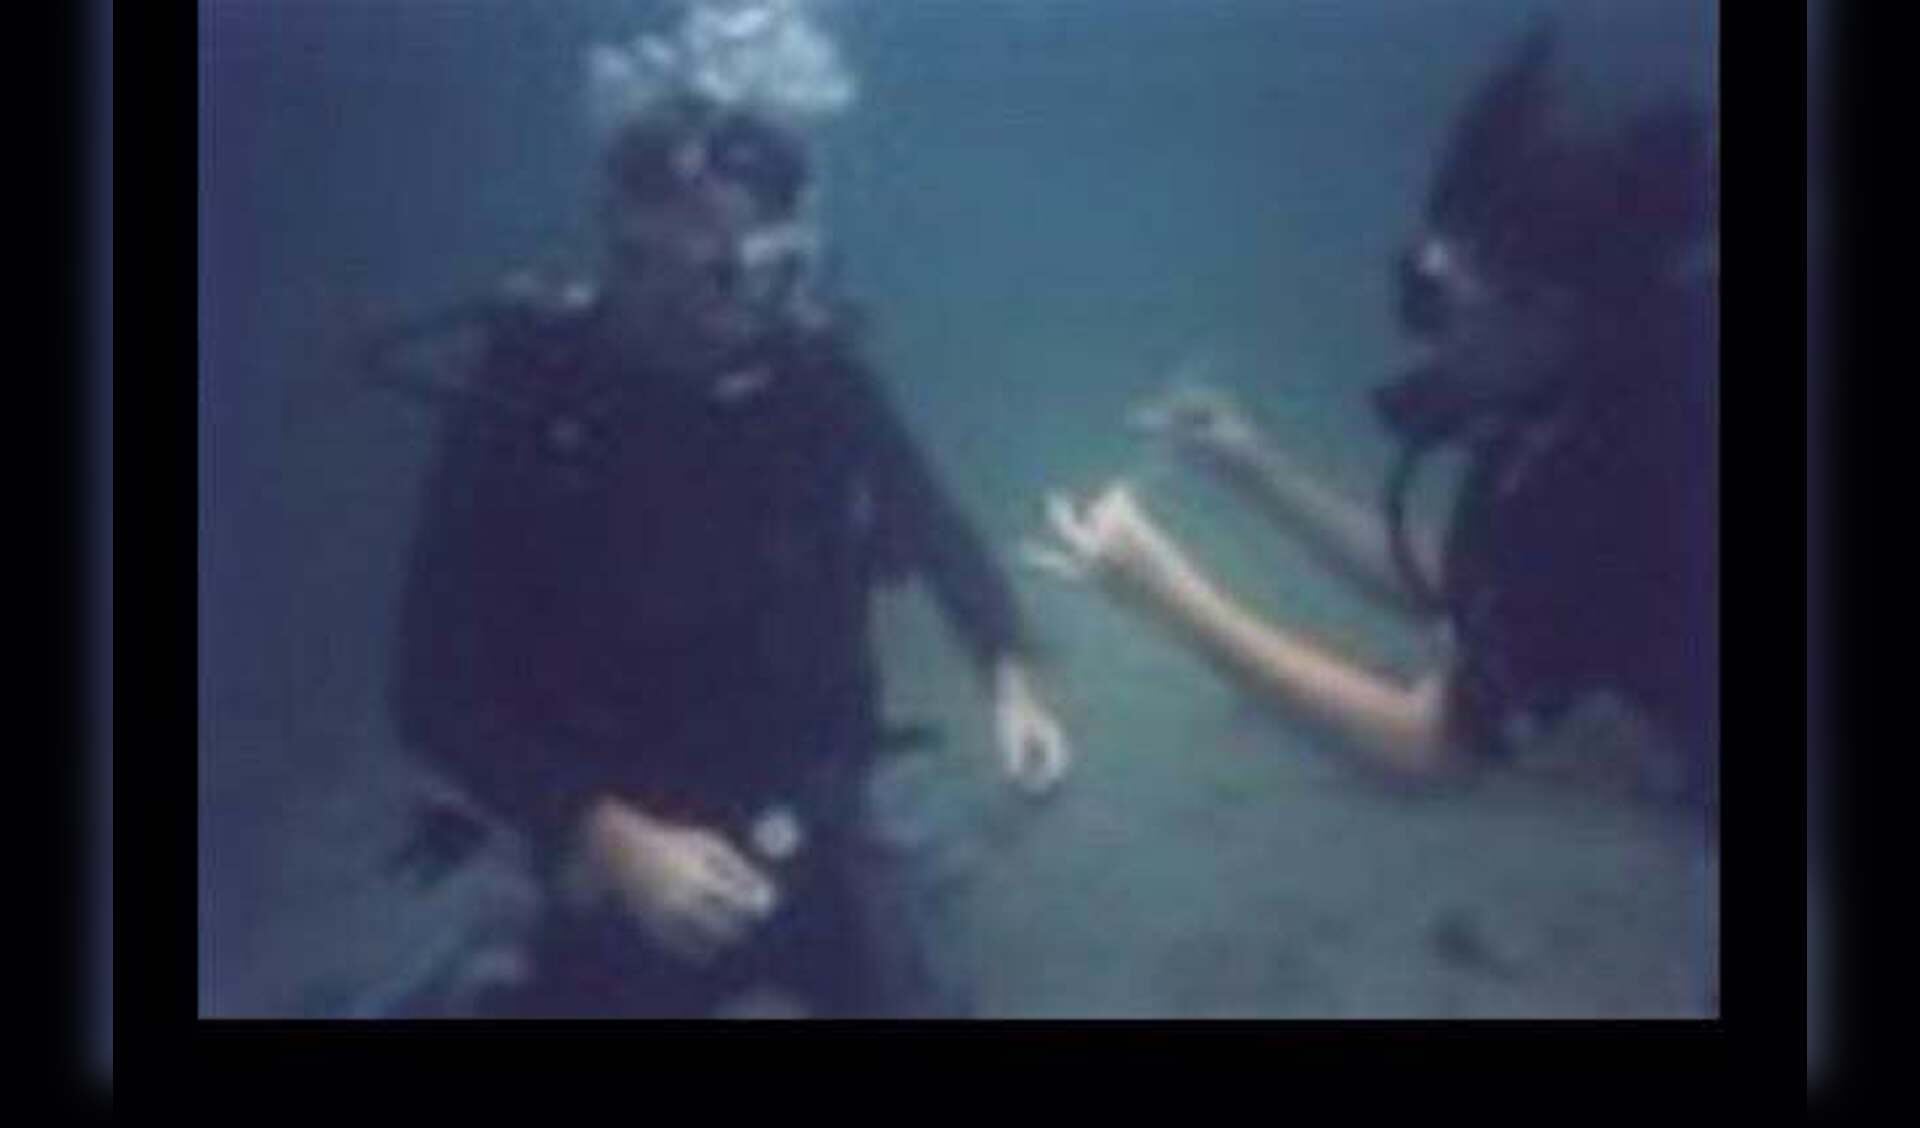 Het spectaculaire huwelijksaanzoek onder water.